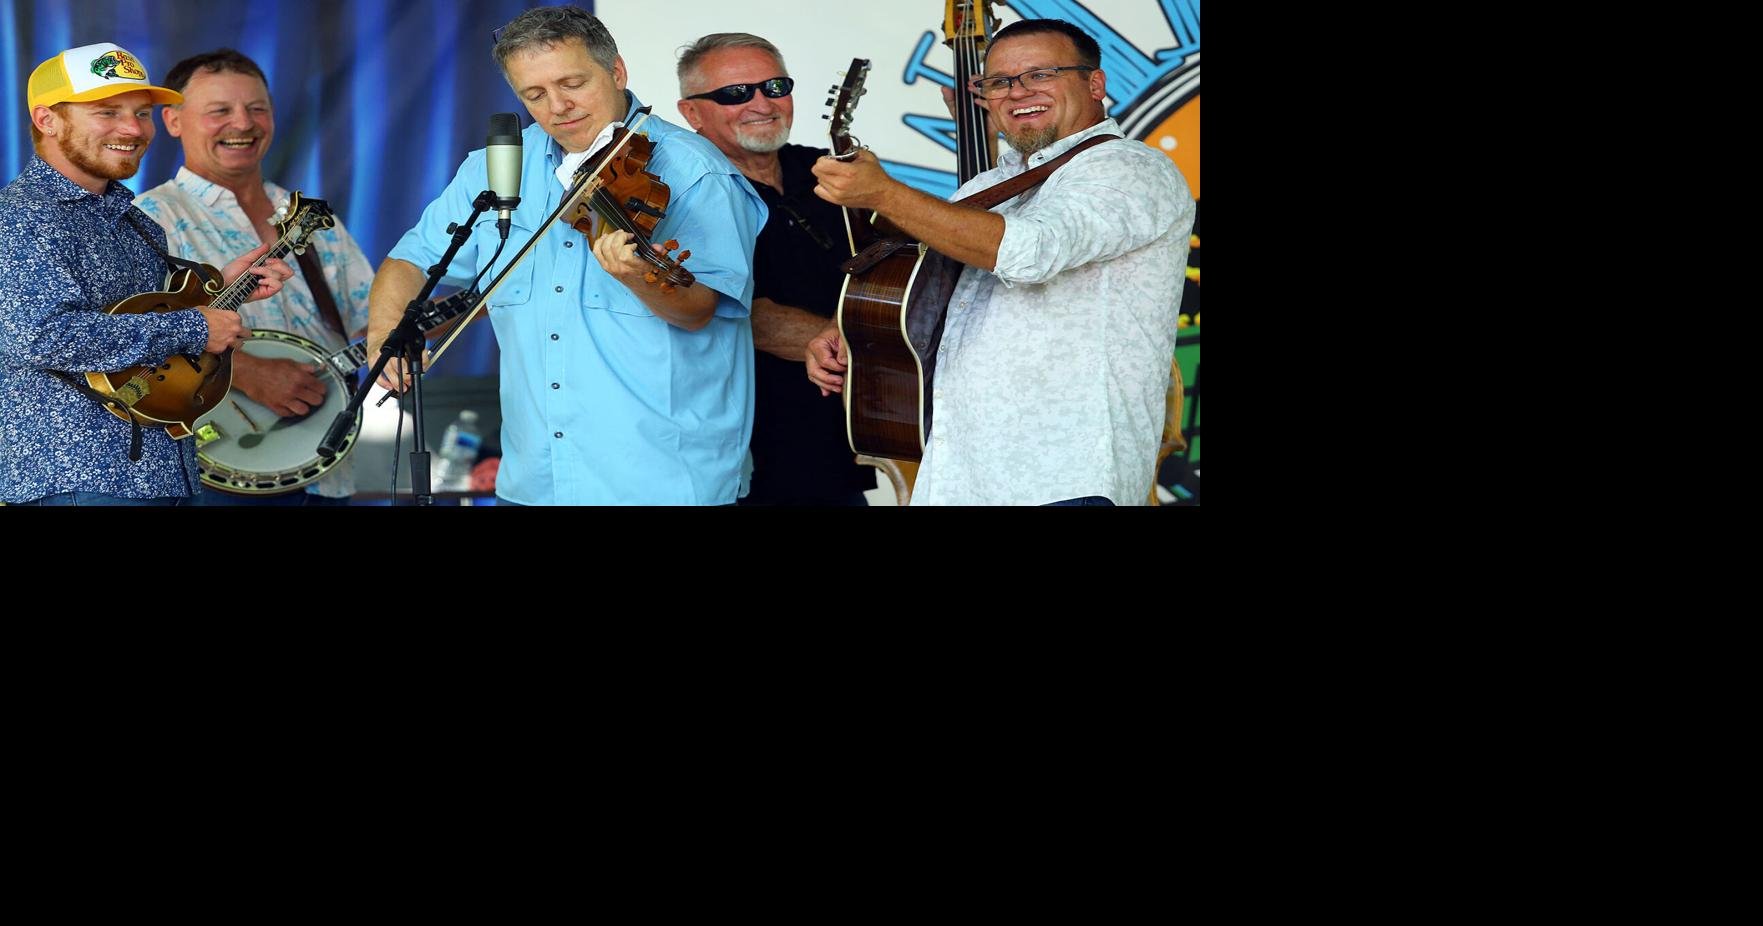 Winding Creek Bluegrass Festival Features